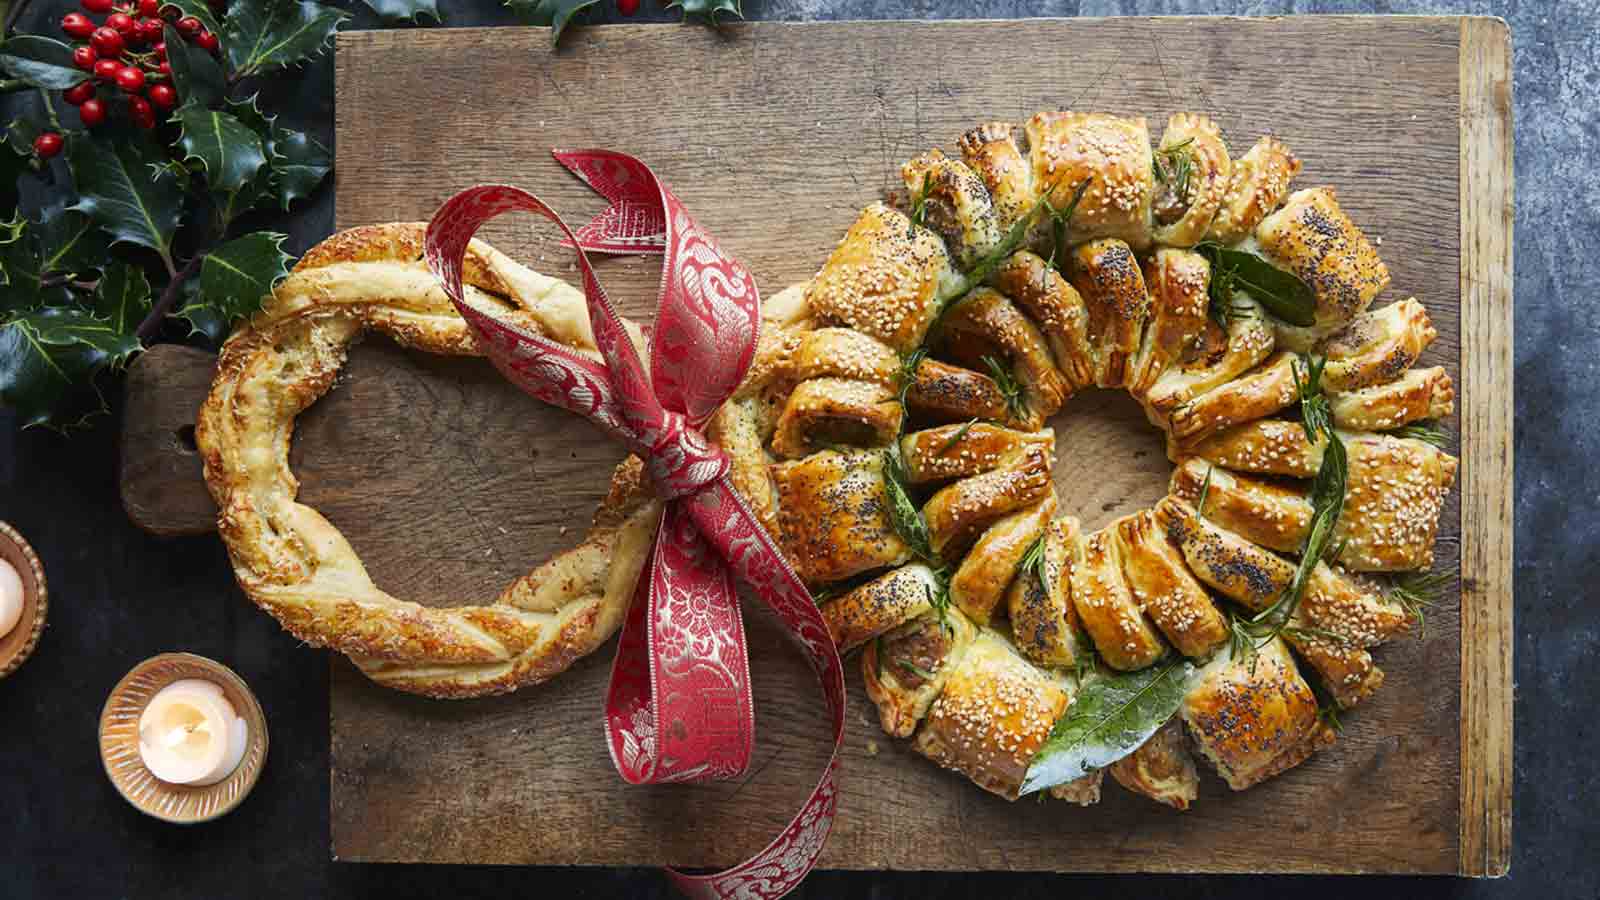 Corona de hojaldre con salchicha - Jamie Oliver - Receta - Canal Cocina